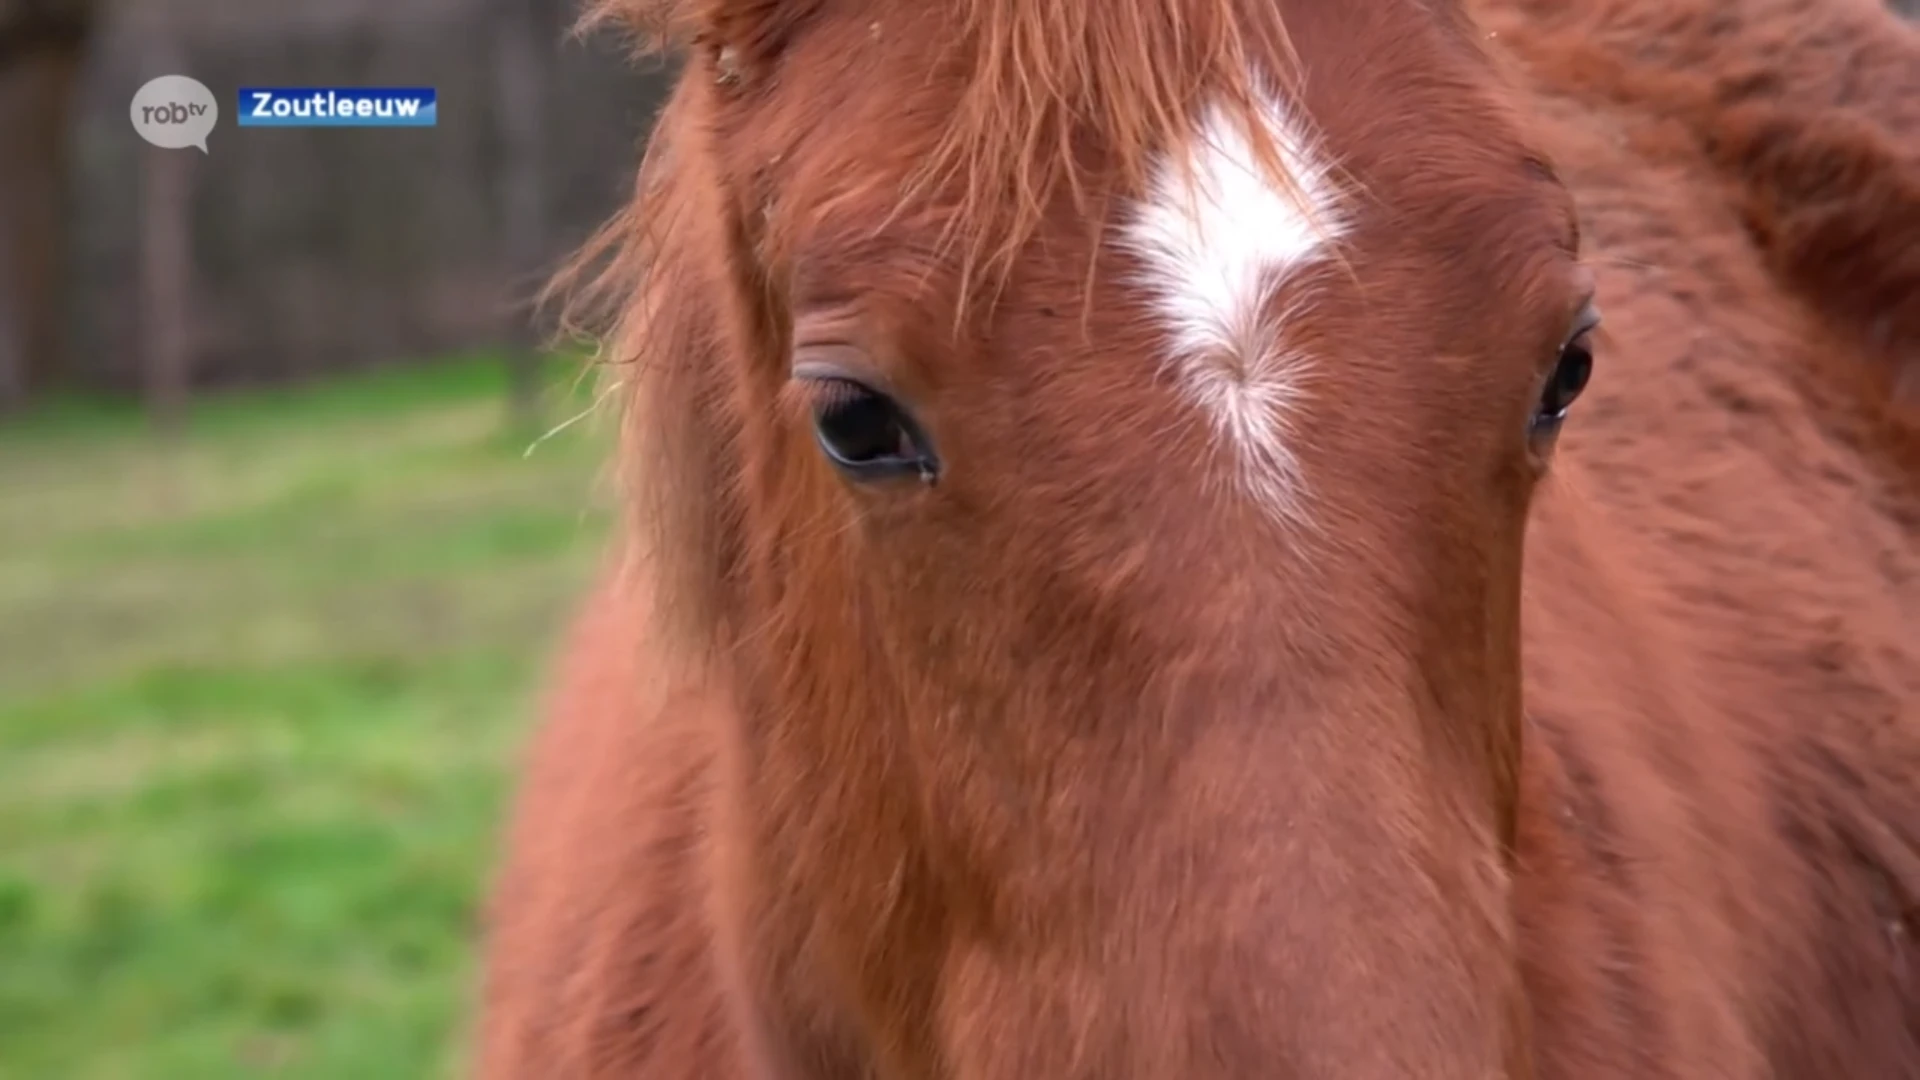 Meerdere paarden overleden nadat besmettelijke rhinovirus uitbreekt in Zoutleeuw: "Virus wordt gevaarlijk als het in het bloed komt"